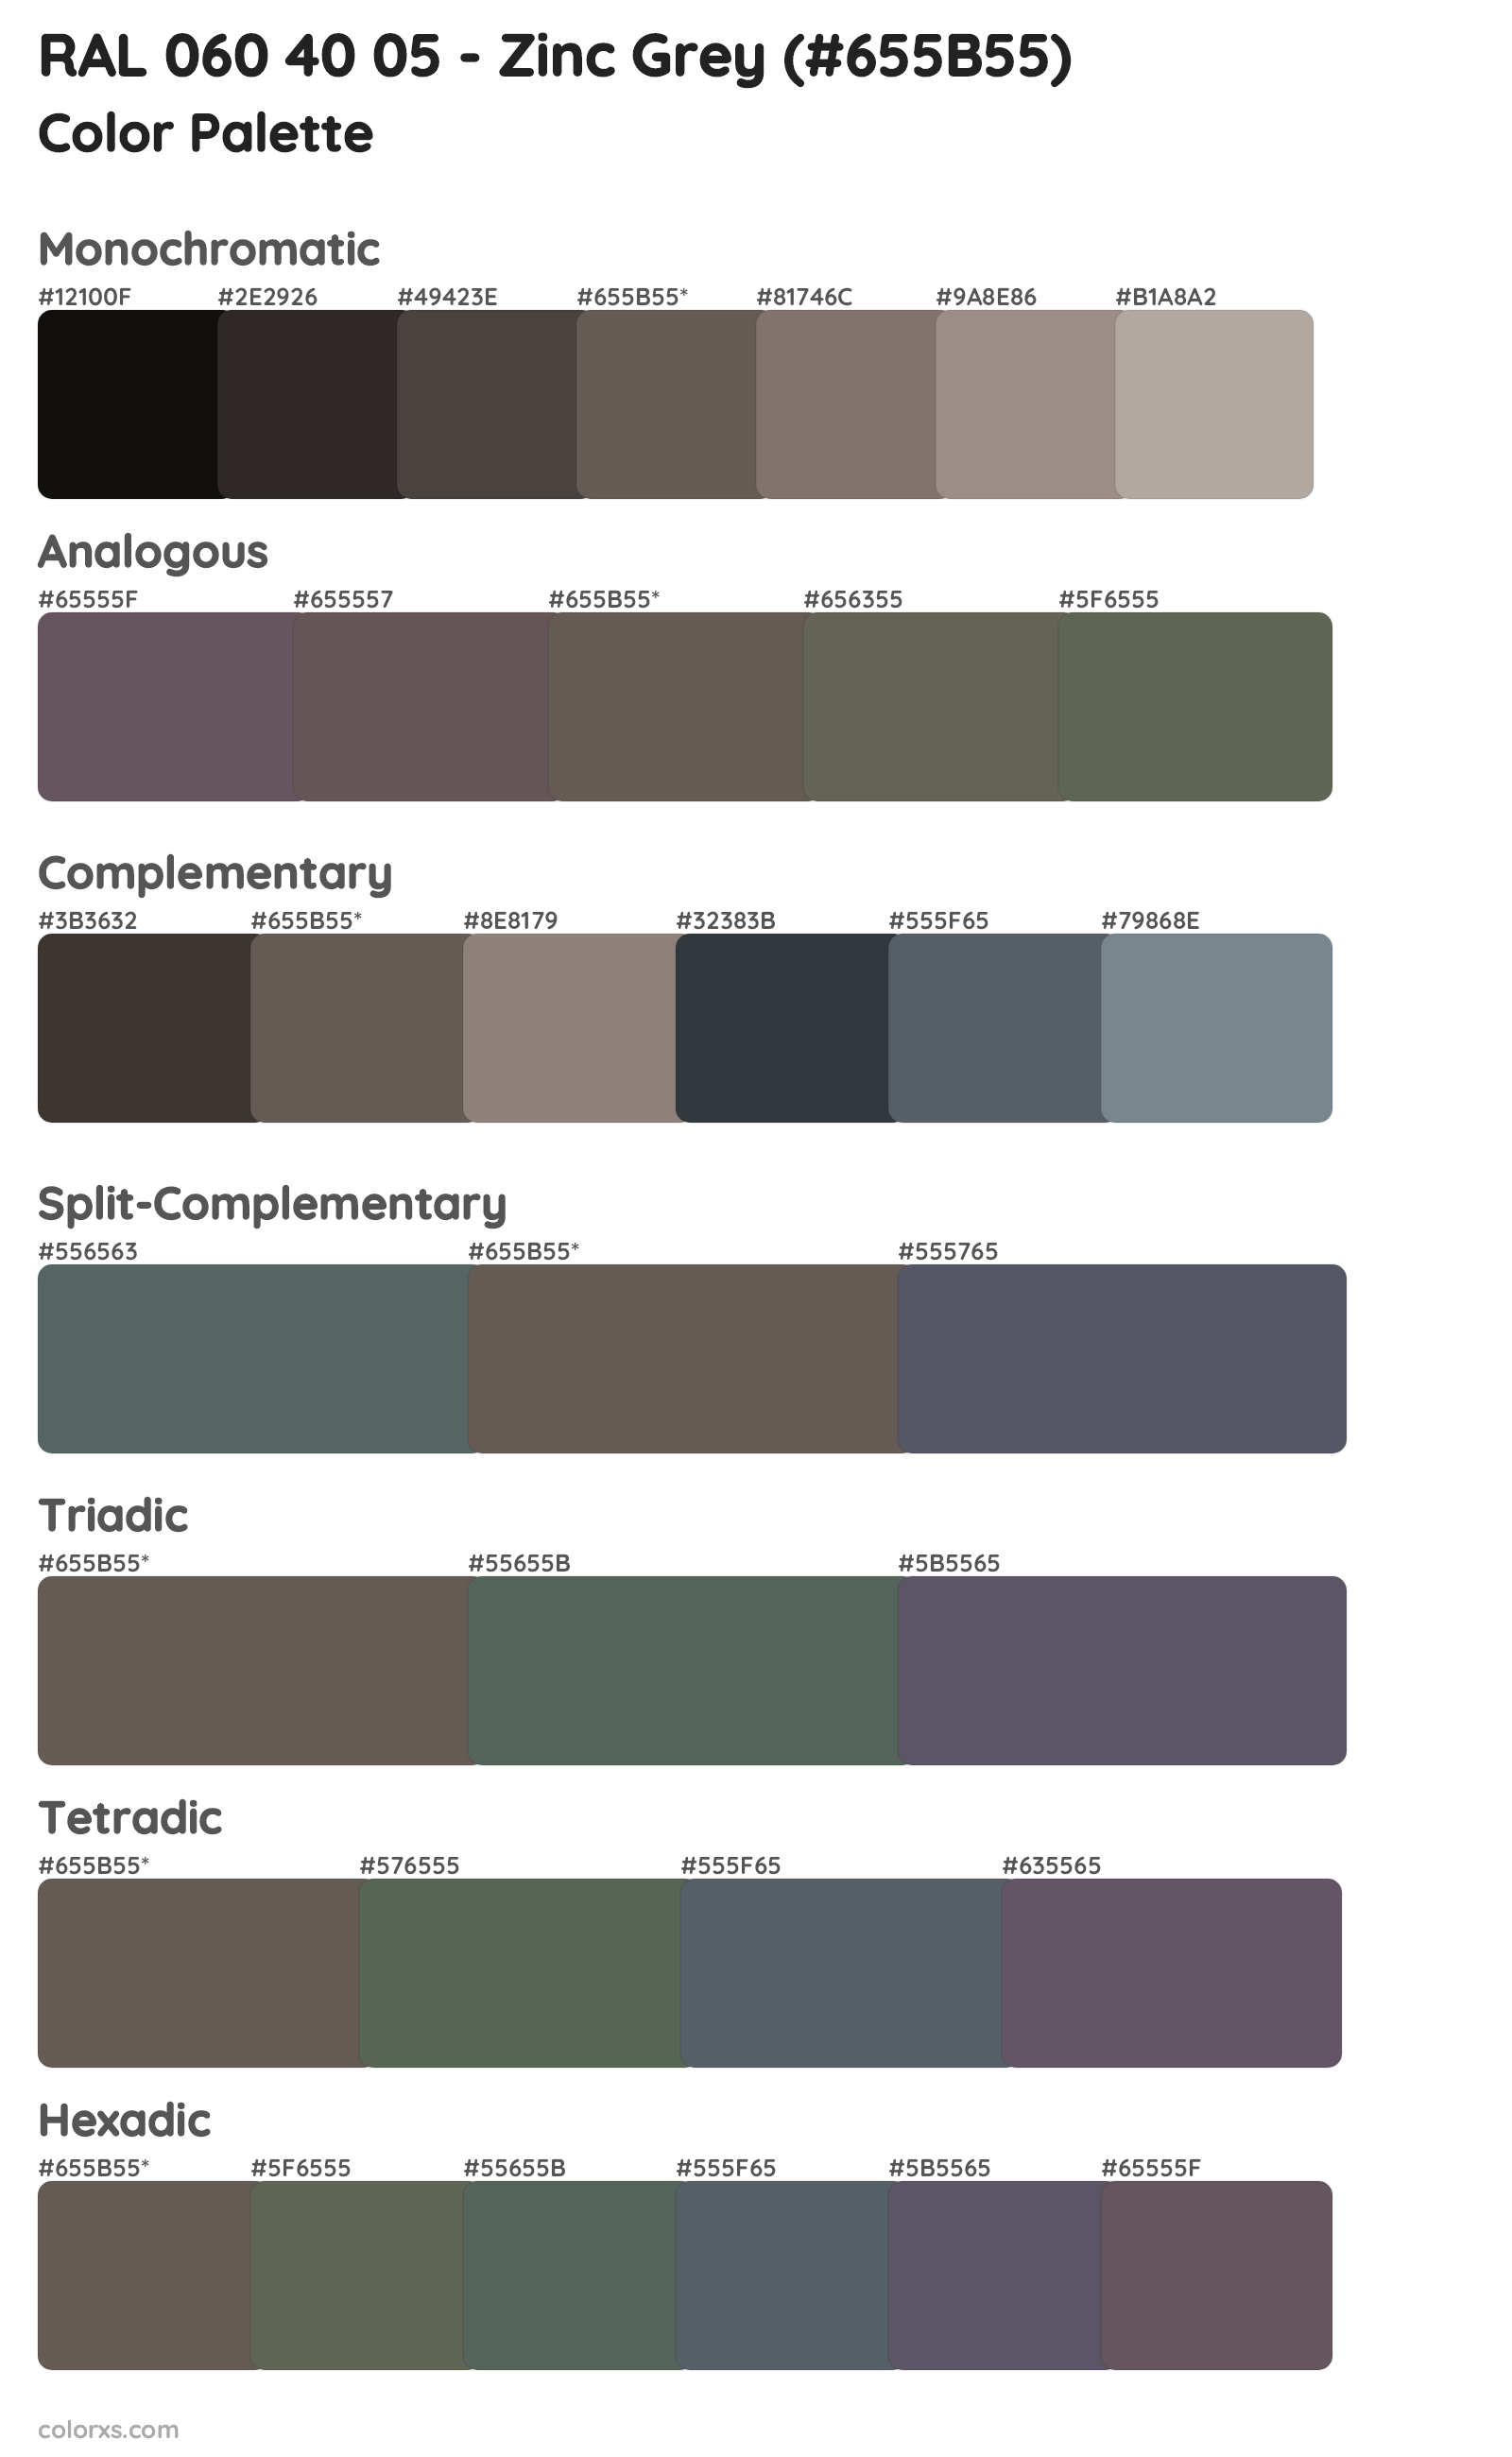 RAL 060 40 05 - Zinc Grey Color Scheme Palettes